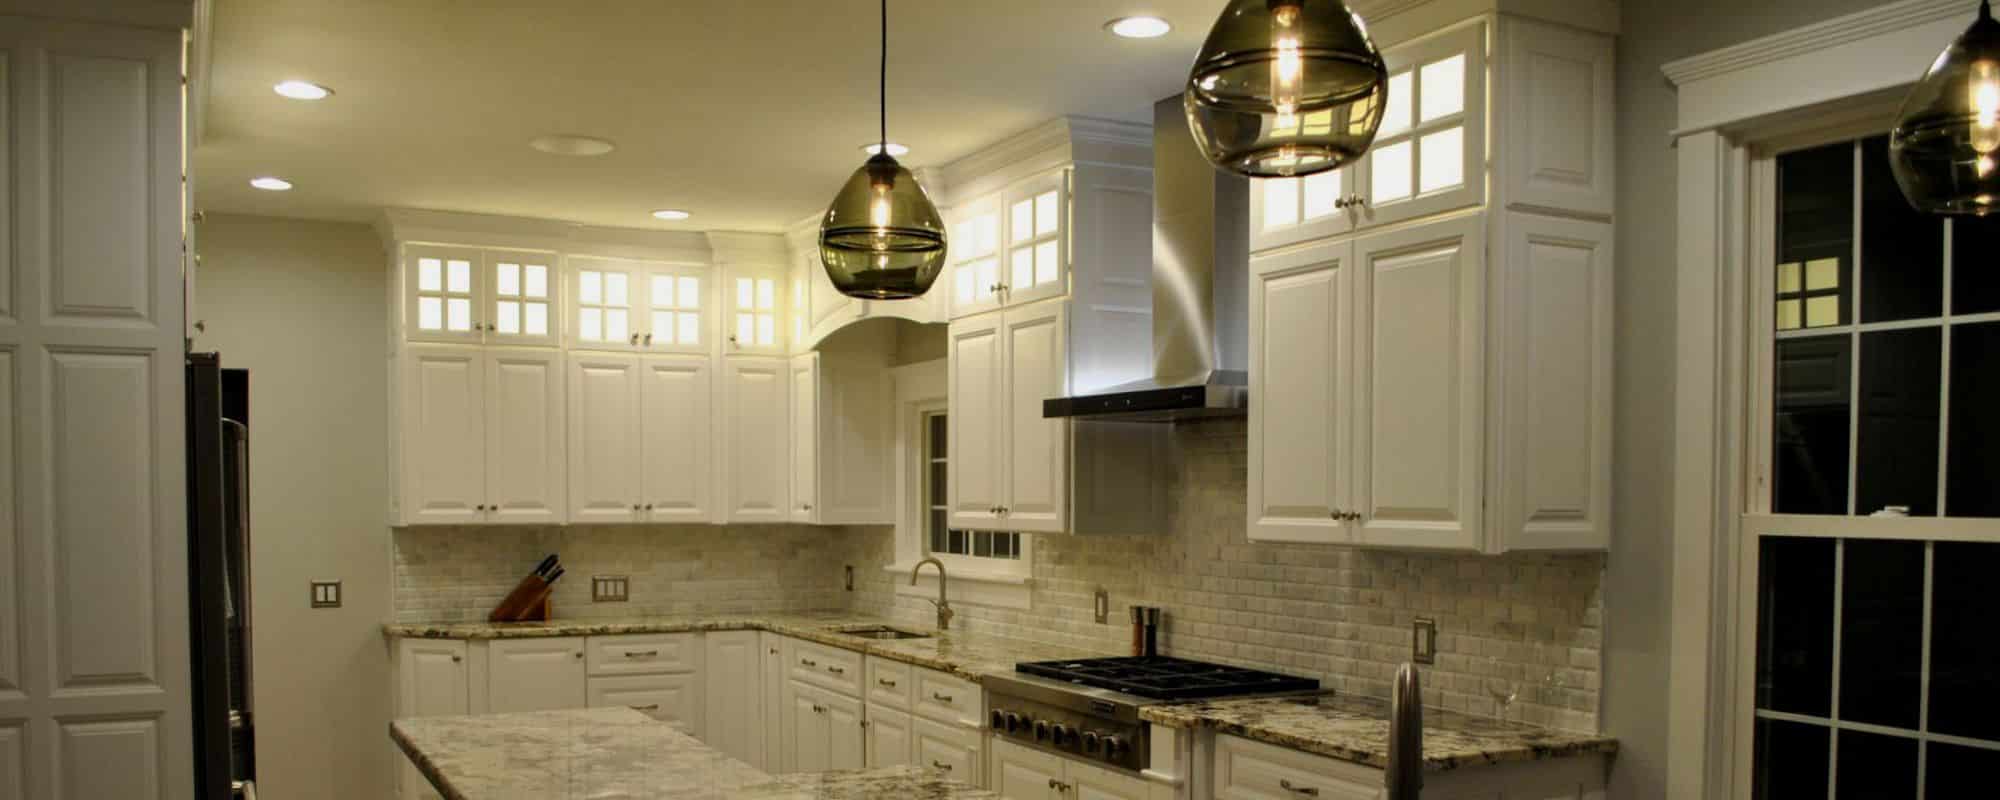 custom kitchen cabinets white